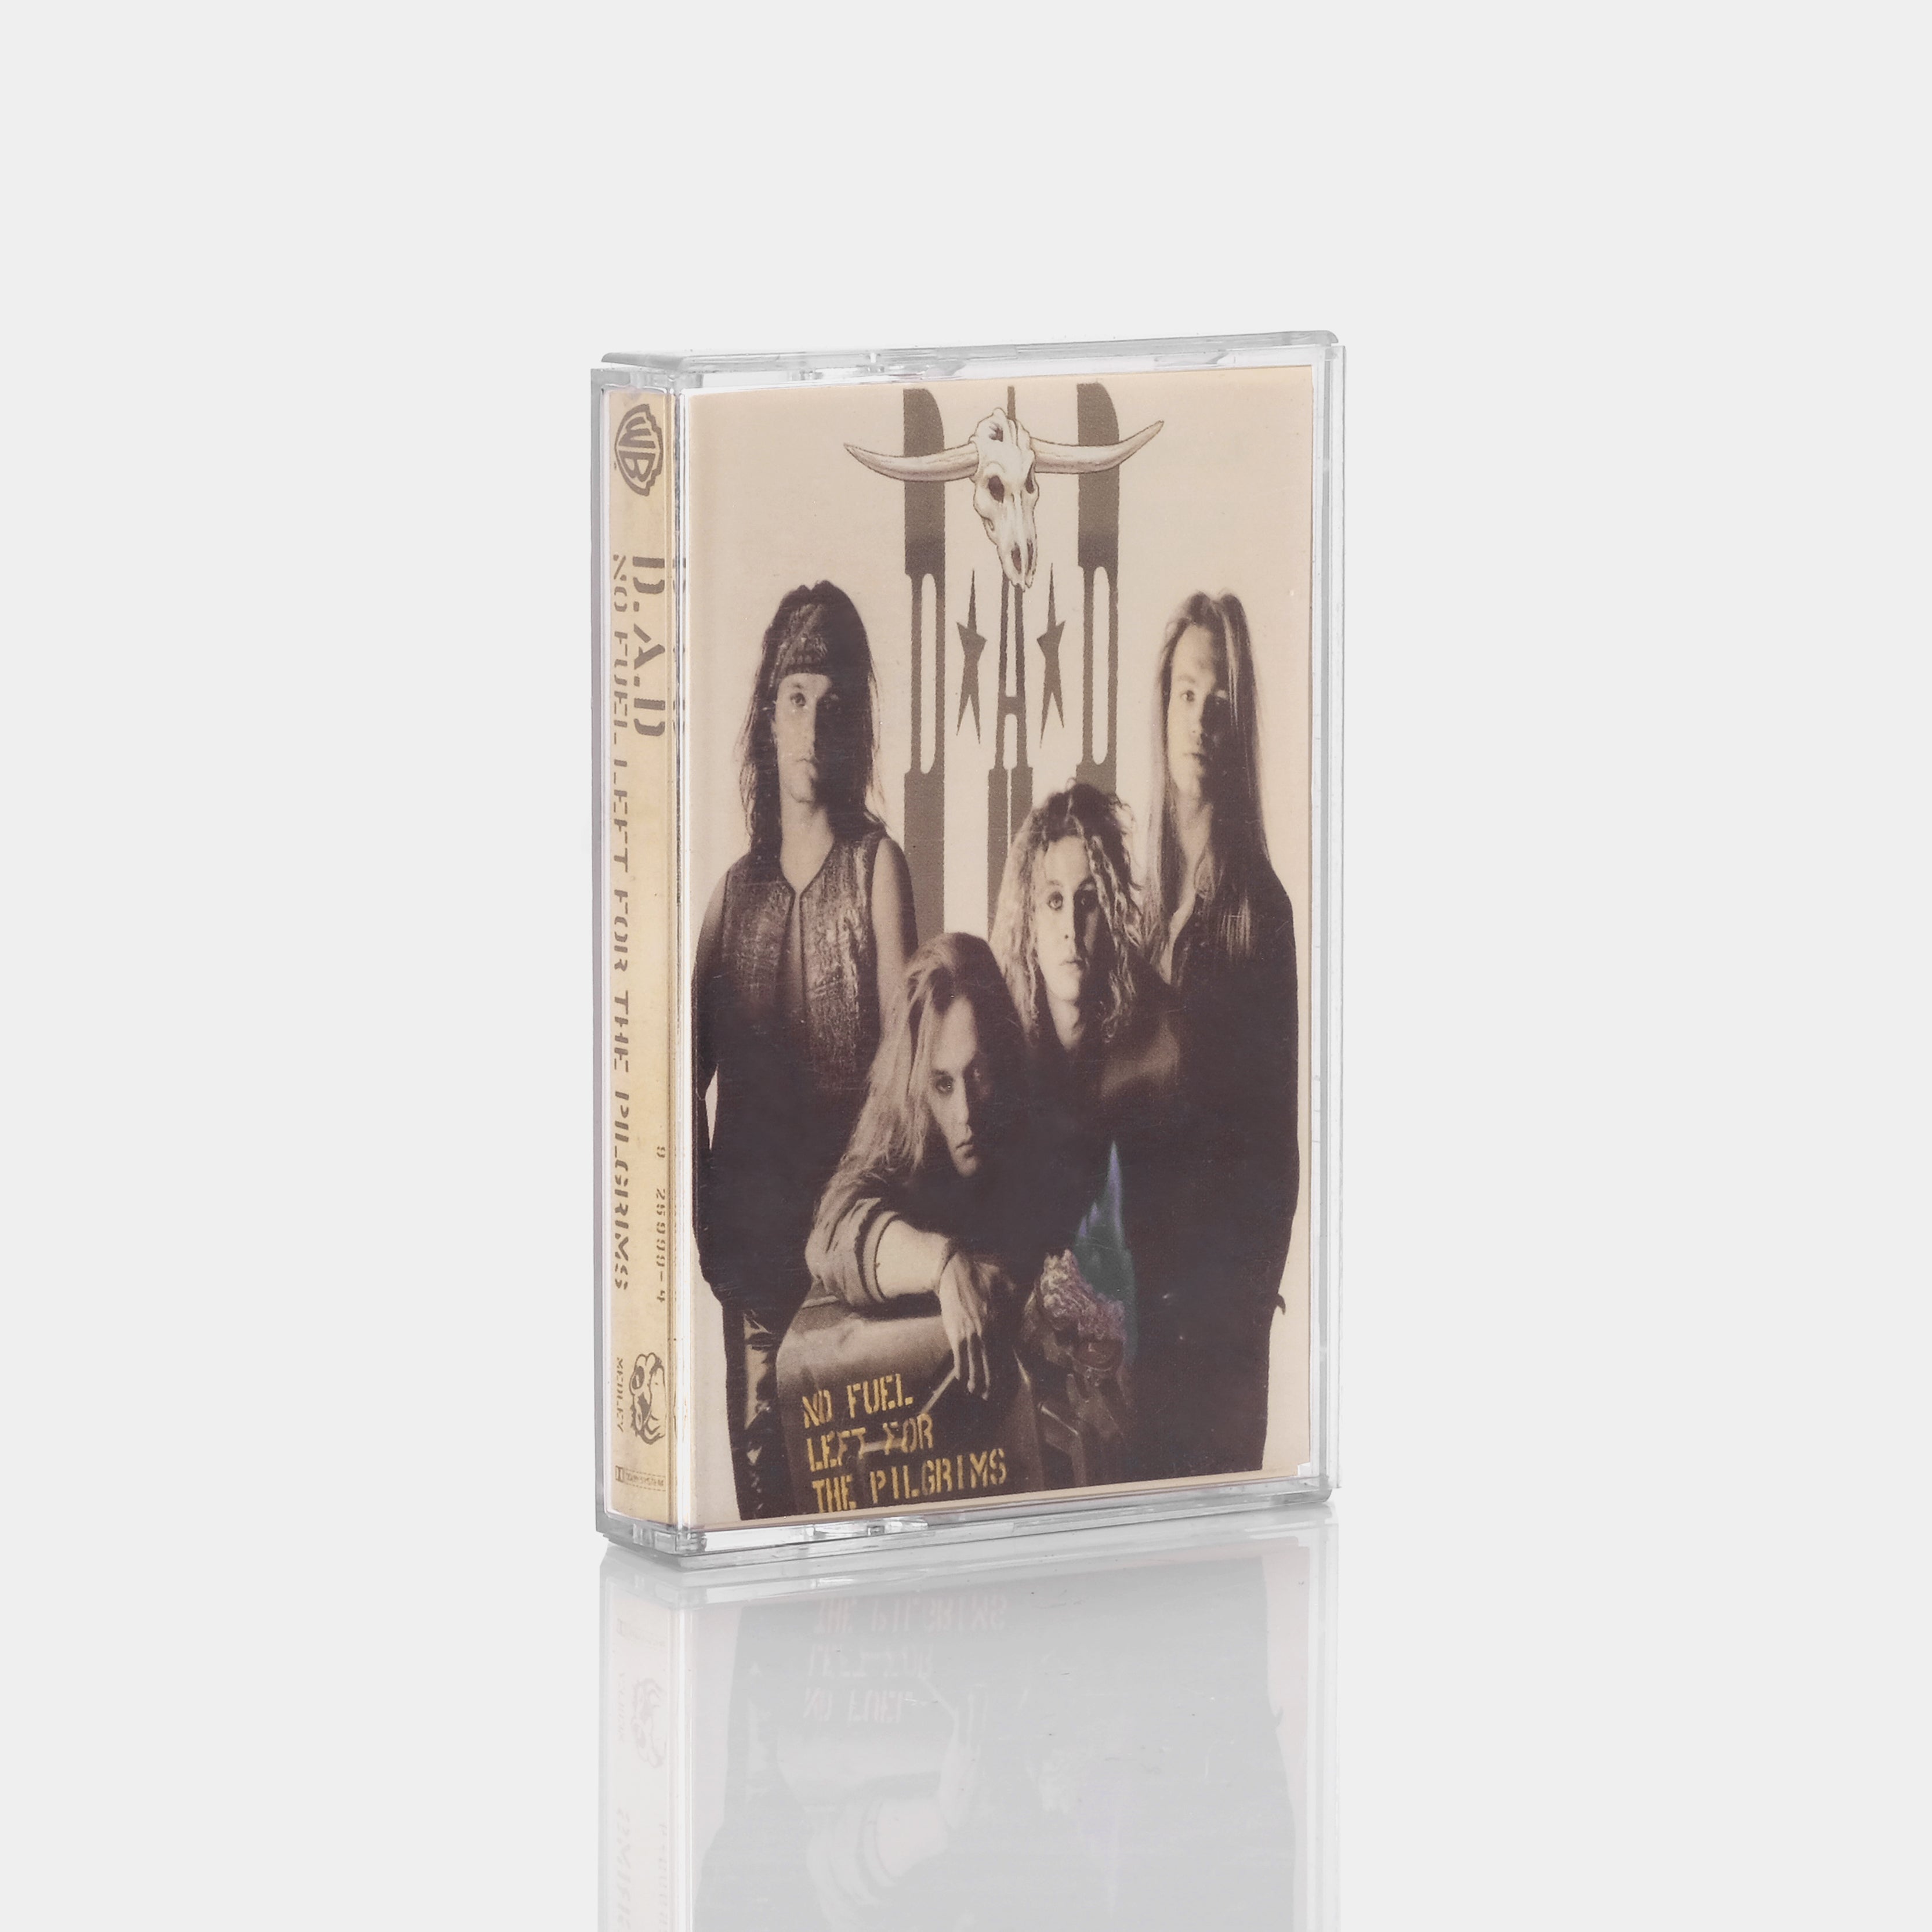 D.A.D - No Fuel Left For The Pilgrims Cassette Tape